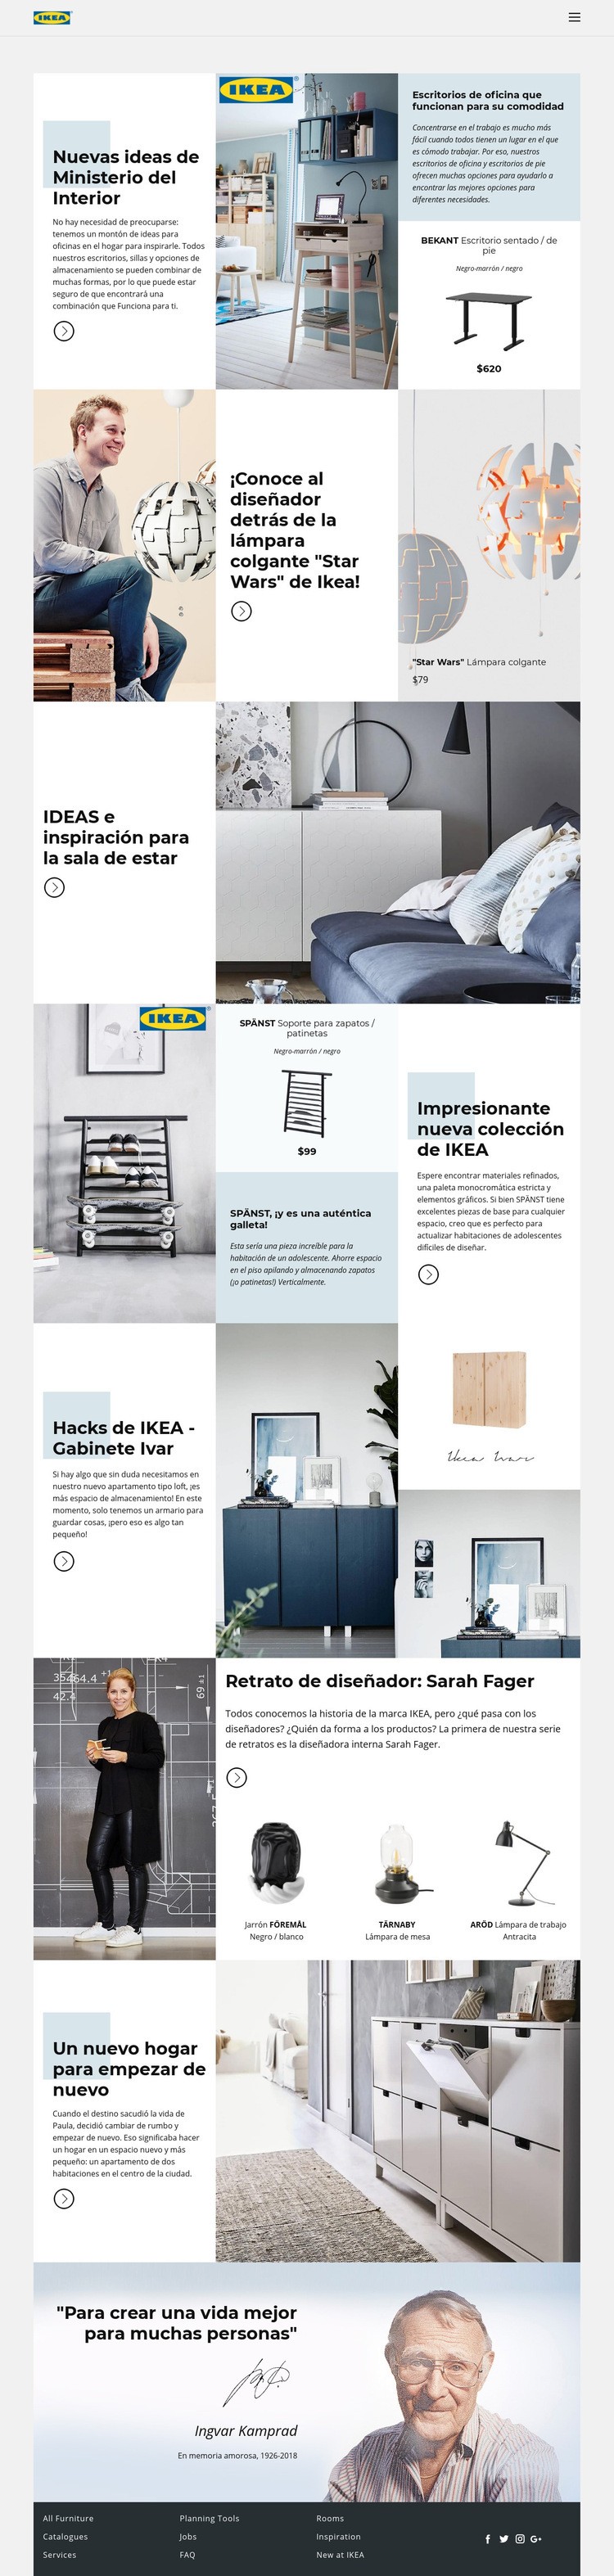 Inspiración de IKEA Diseño de páginas web